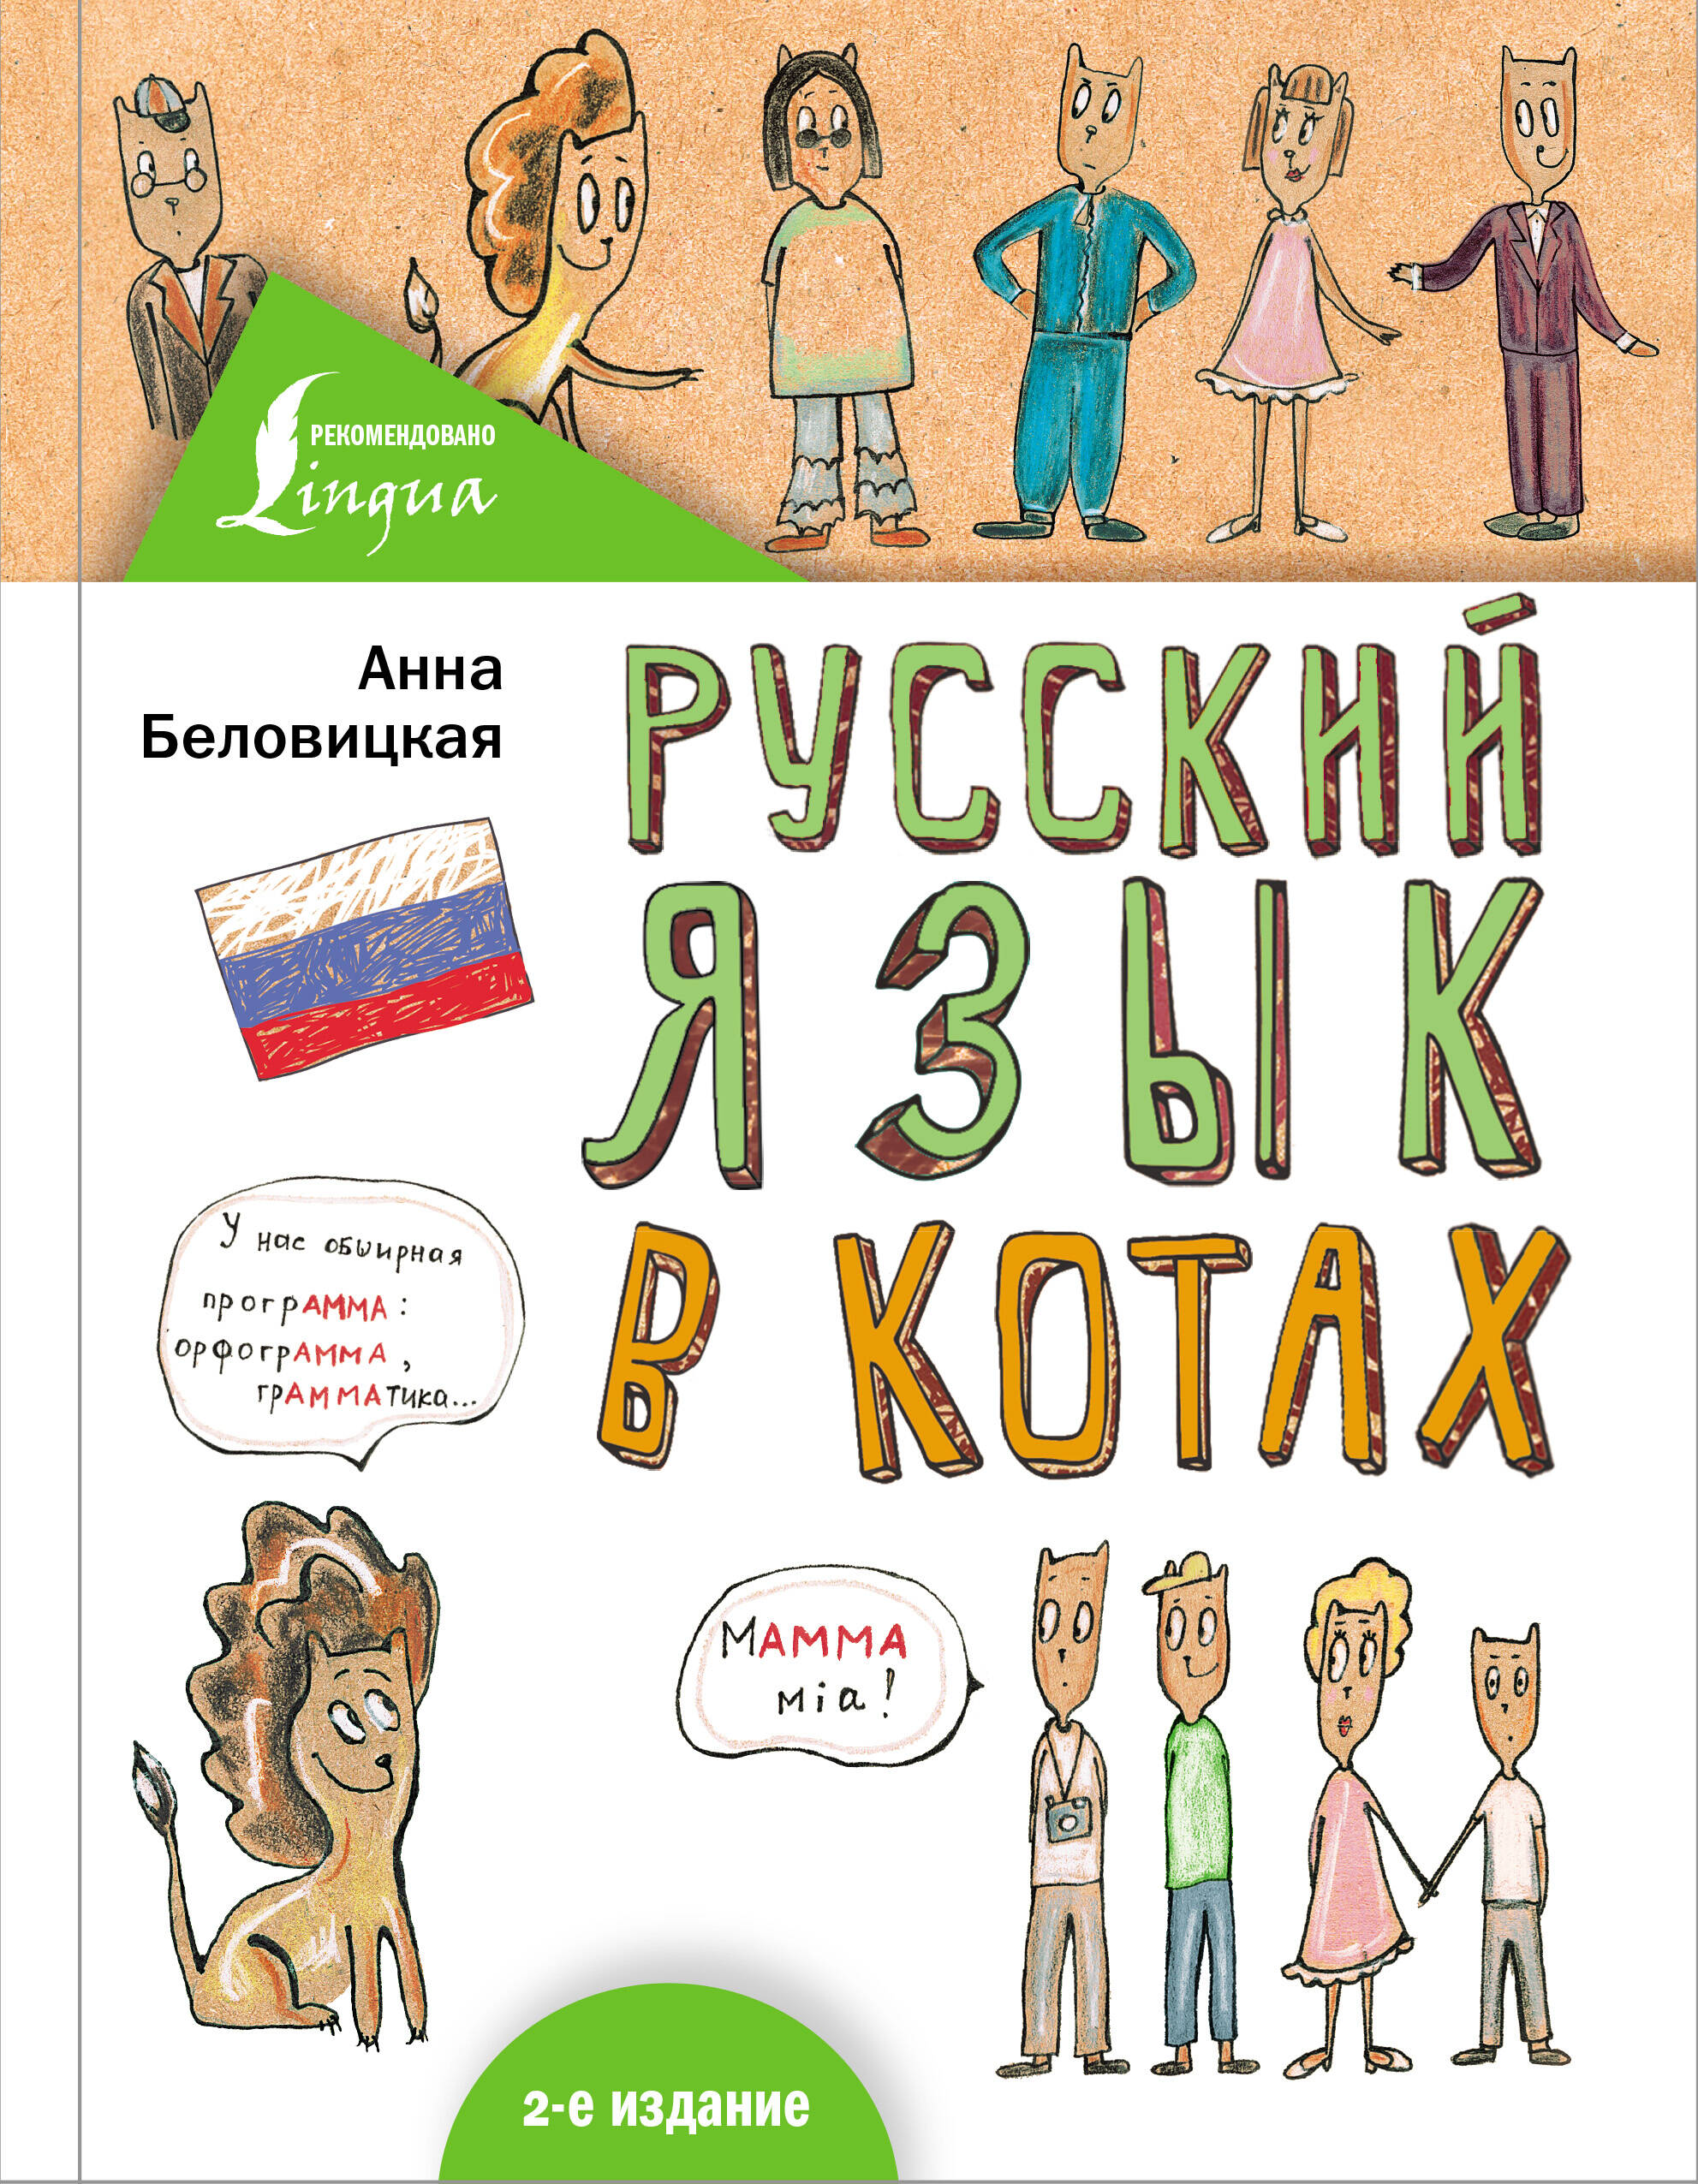 Беловицкая Анна  Русский язык В КОТАХ - страница 0